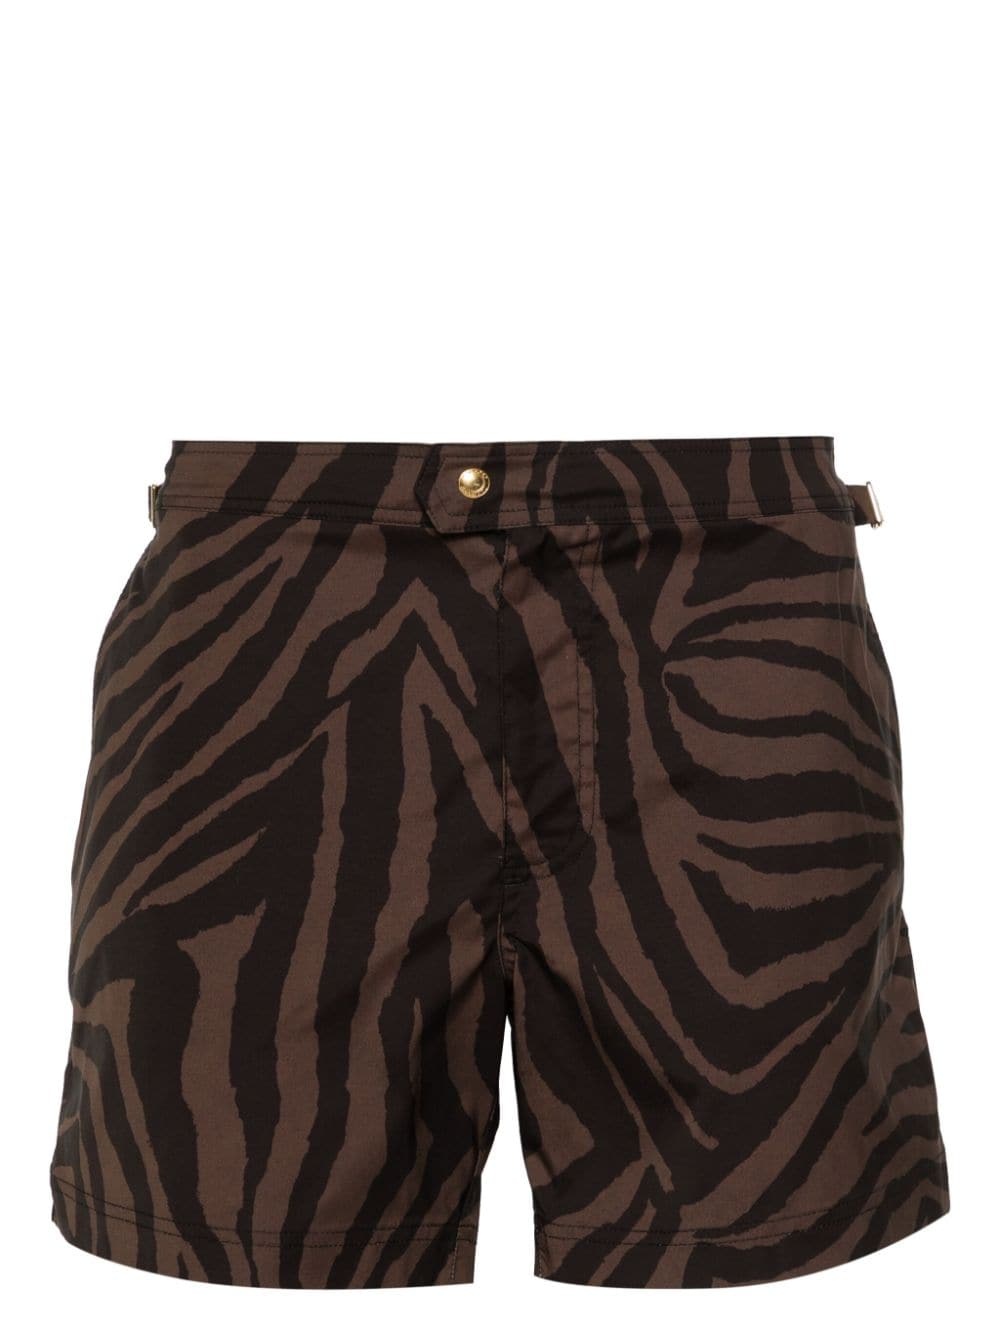 zebra-print swim shorts - 1